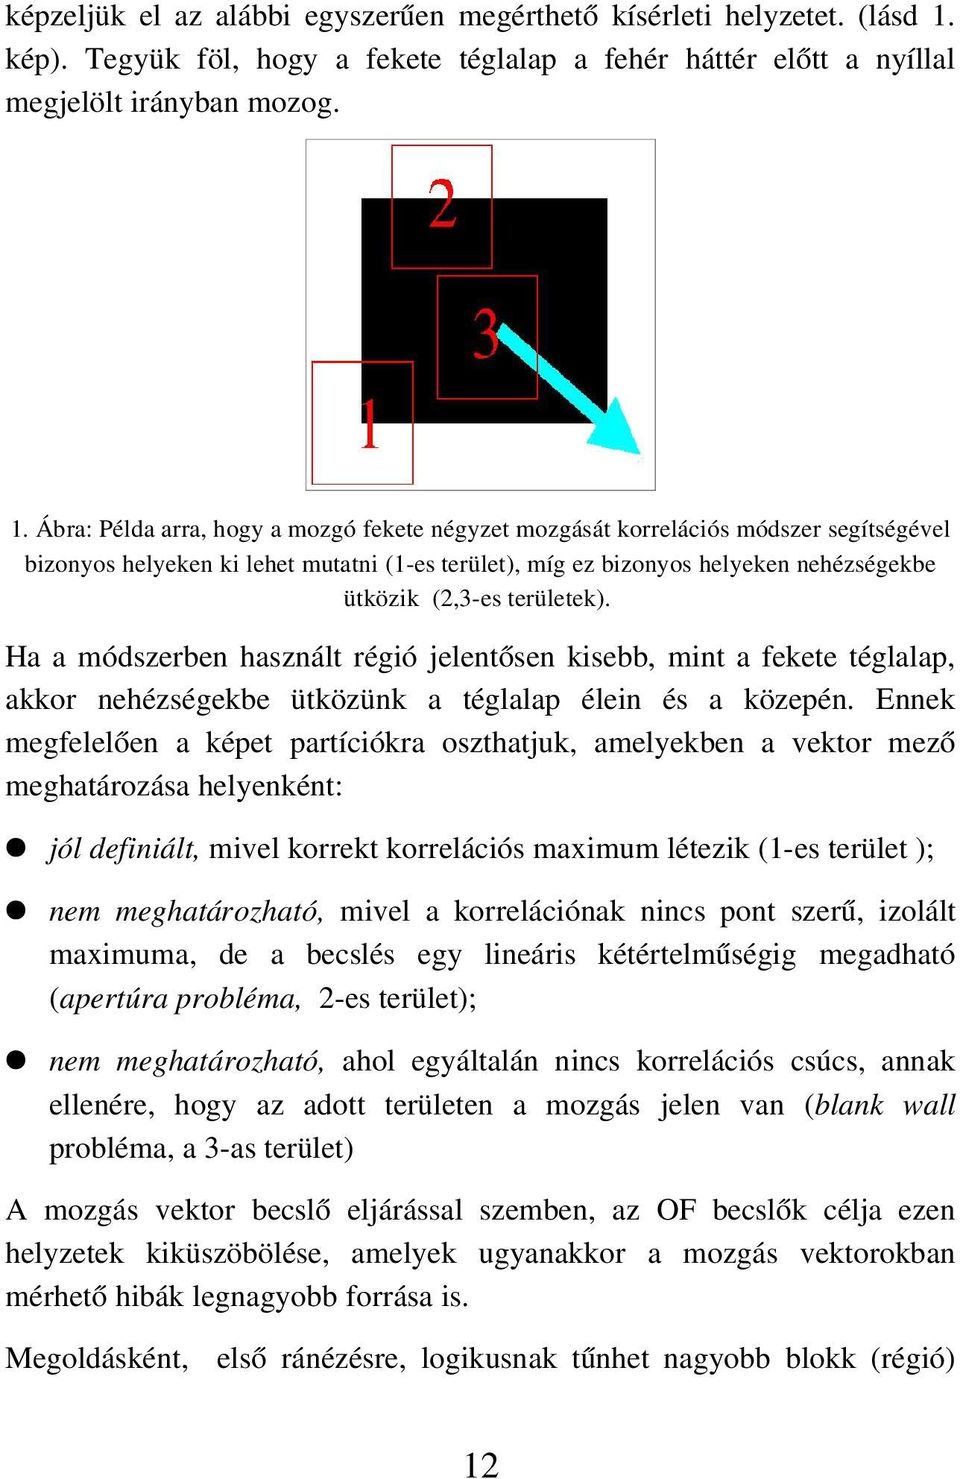 Ábra: Példa arra, hogy a mozgó fekete négyzet mozgását korrelációs módszer segítségével bizonyos helyeken ki lehet mutatni (1 es terület), míg ez bizonyos helyeken nehézségekbe ütközik (2,3 es